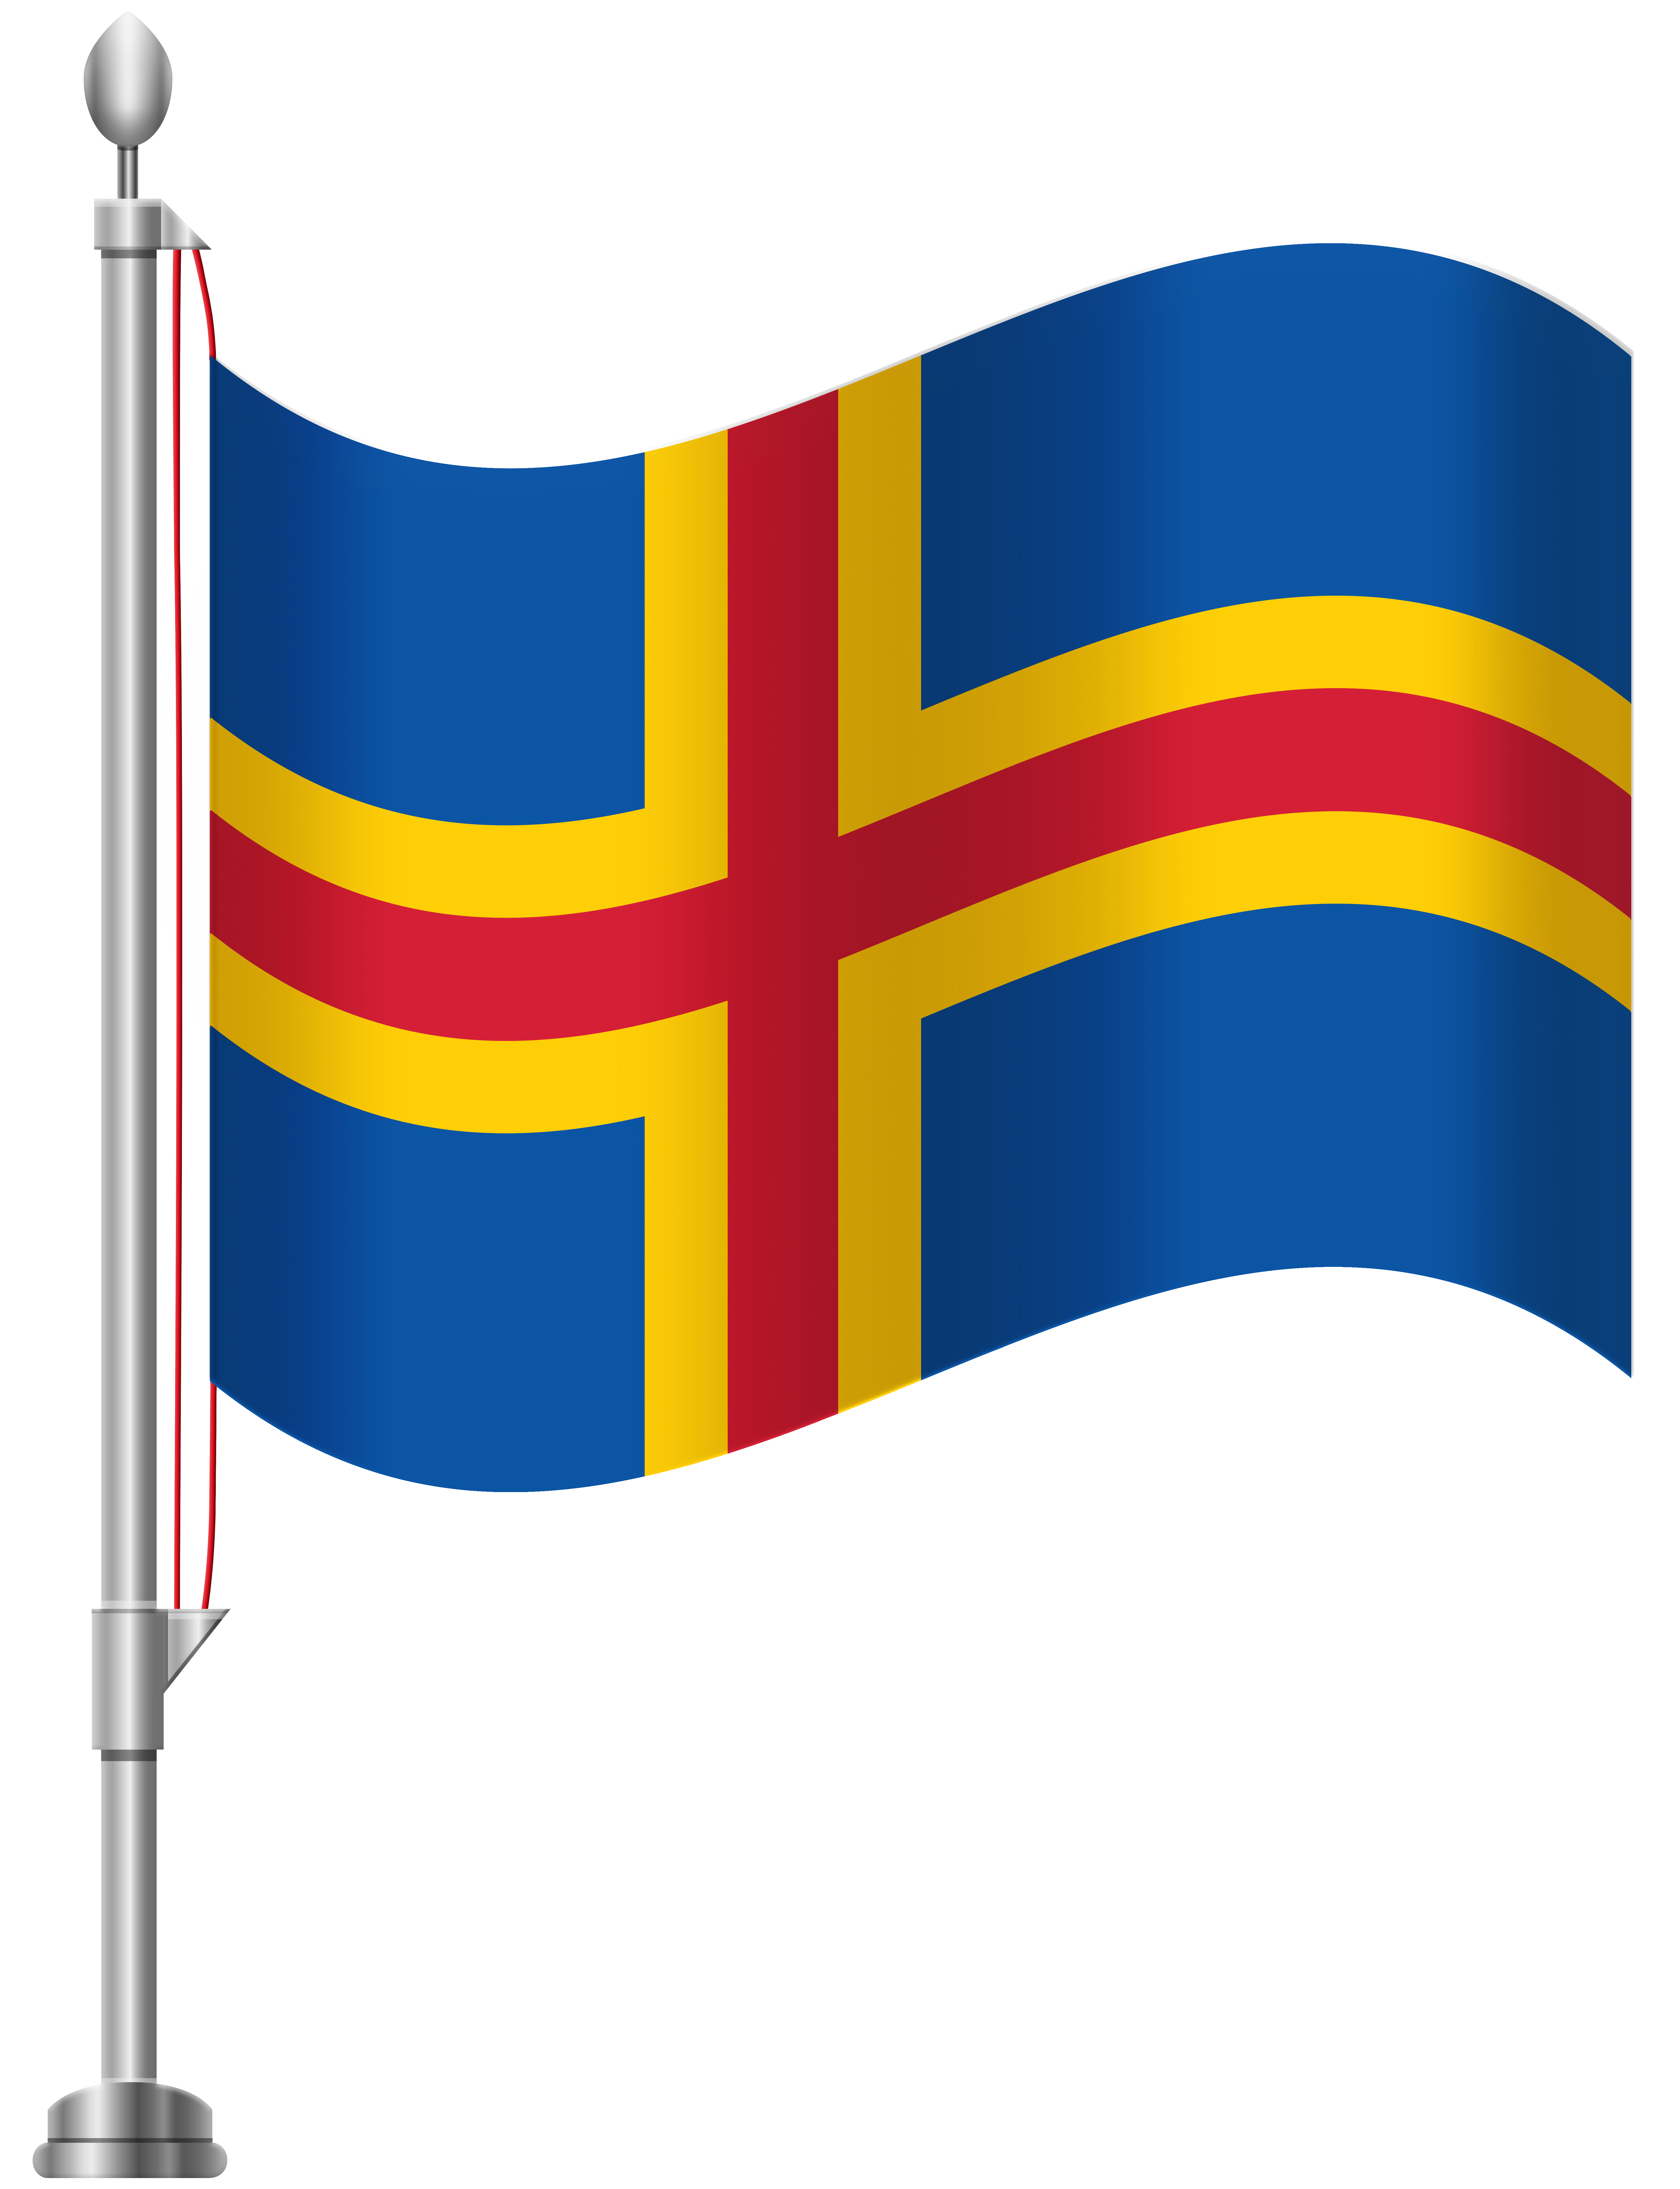 Aland Islands Flag PNG Clip Art.